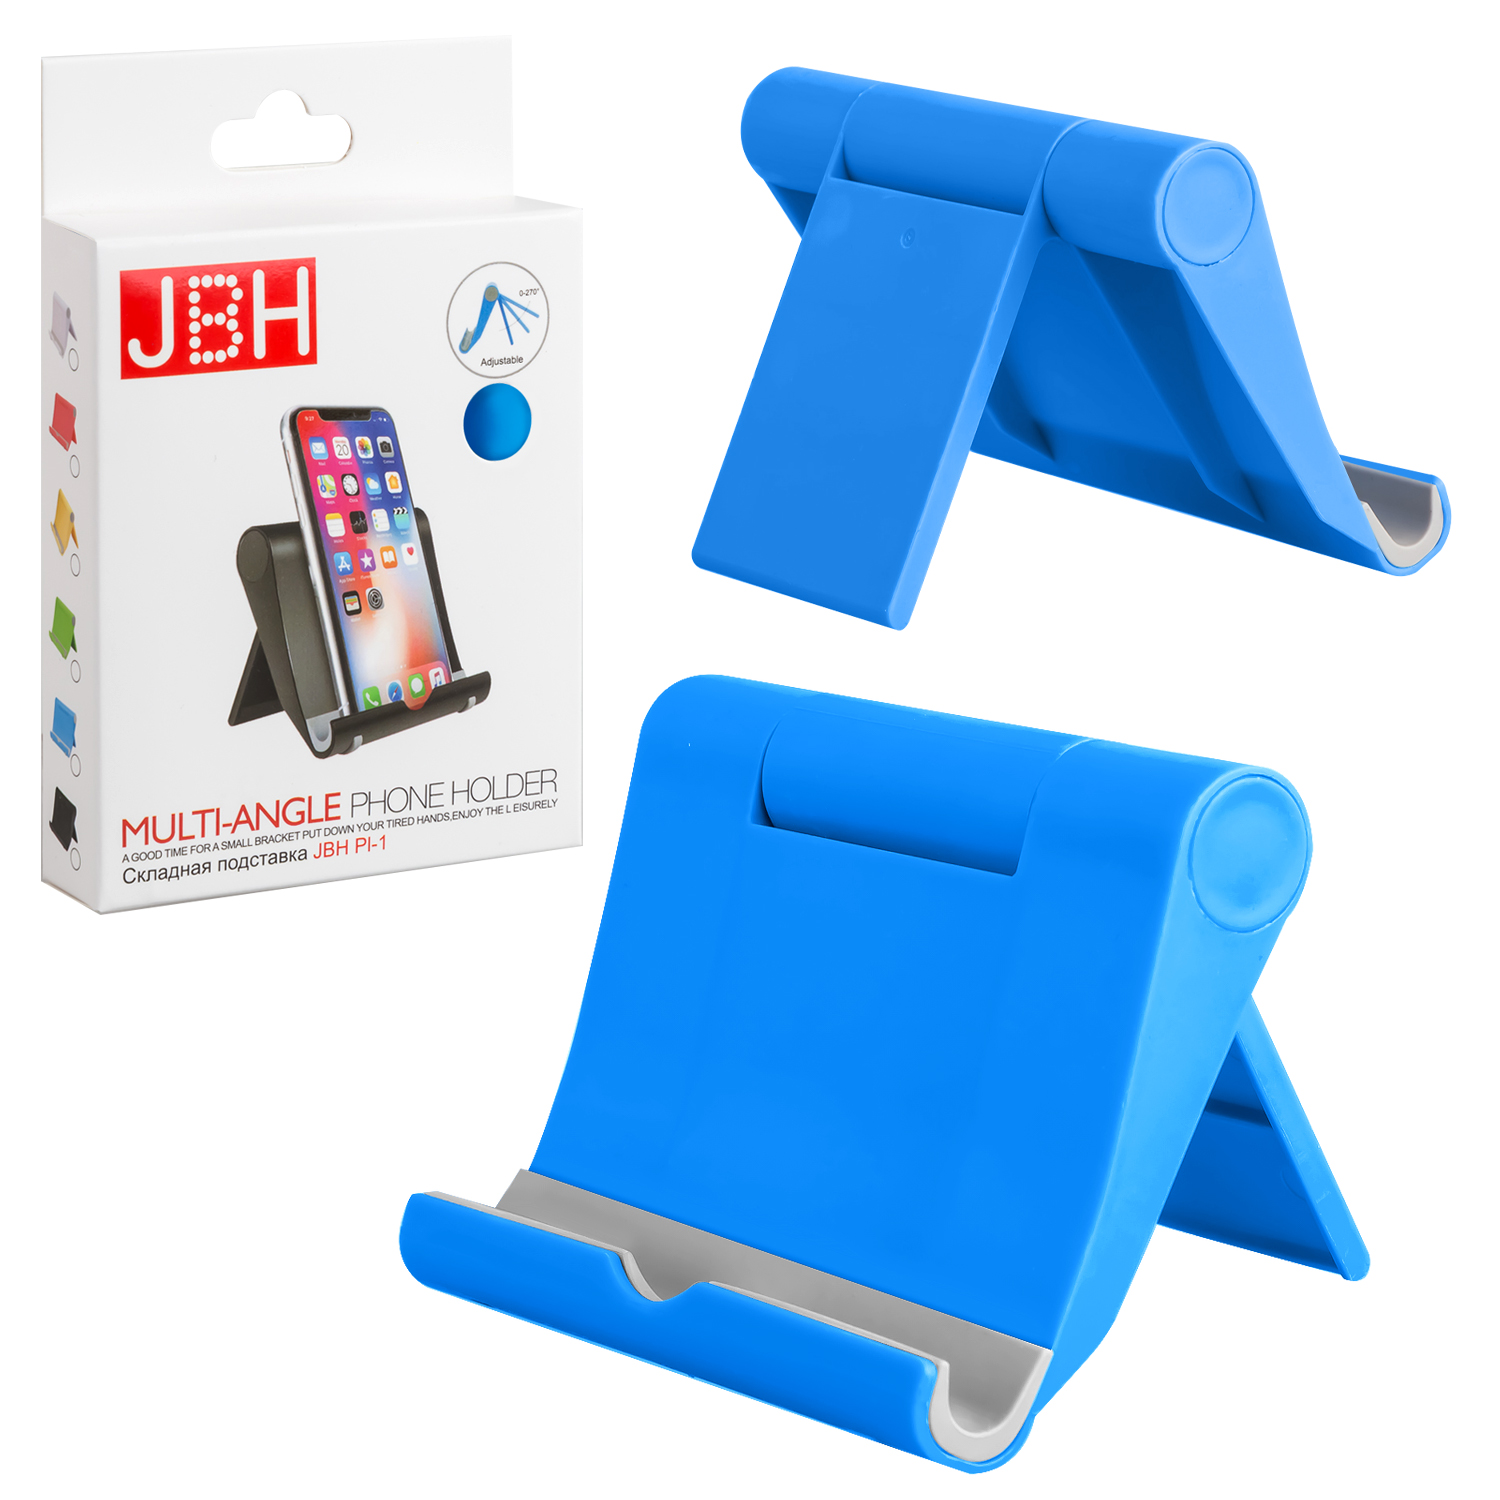 Складная подставка JBH PI-1 синяя (350шт/кор)